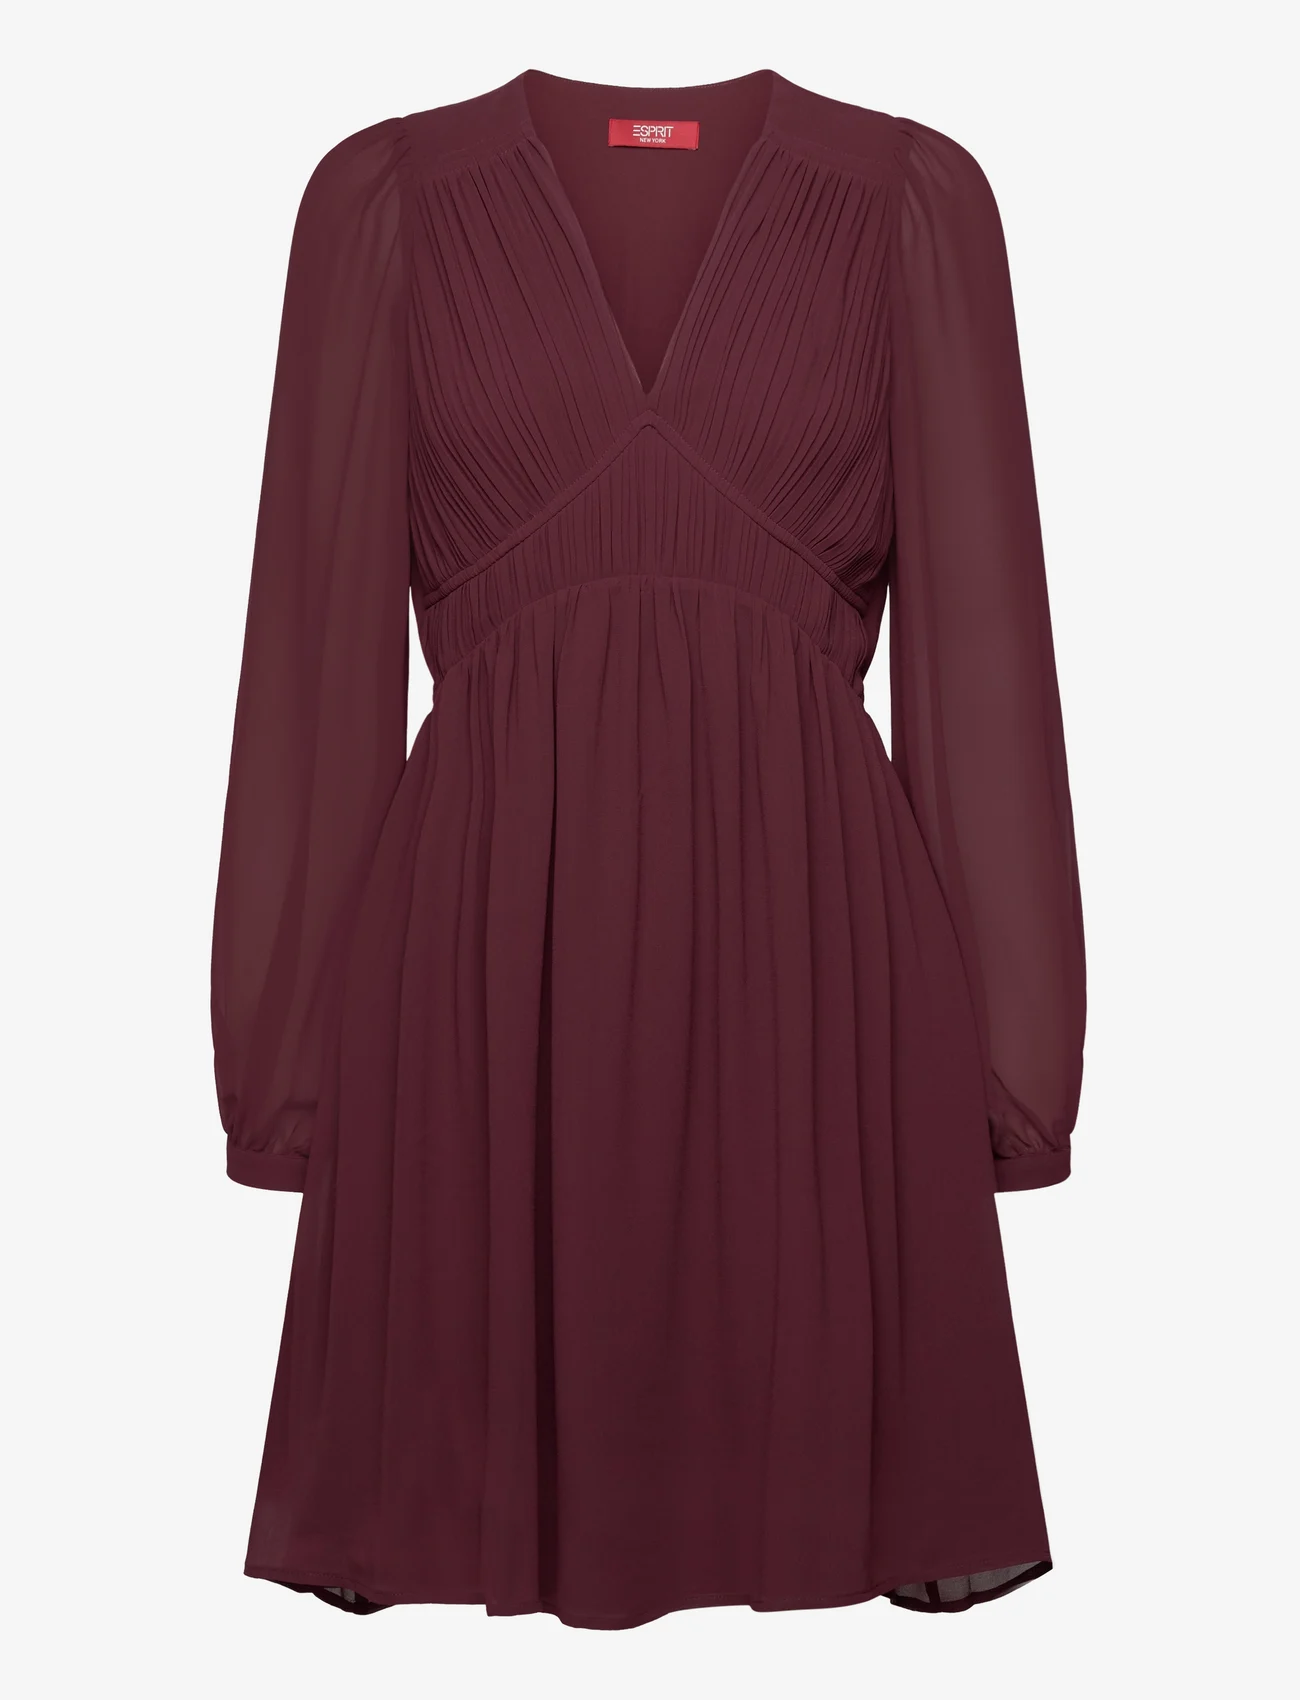 Esprit Casual - Dresses light woven - festkläder till outletpriser - bordeaux red - 0